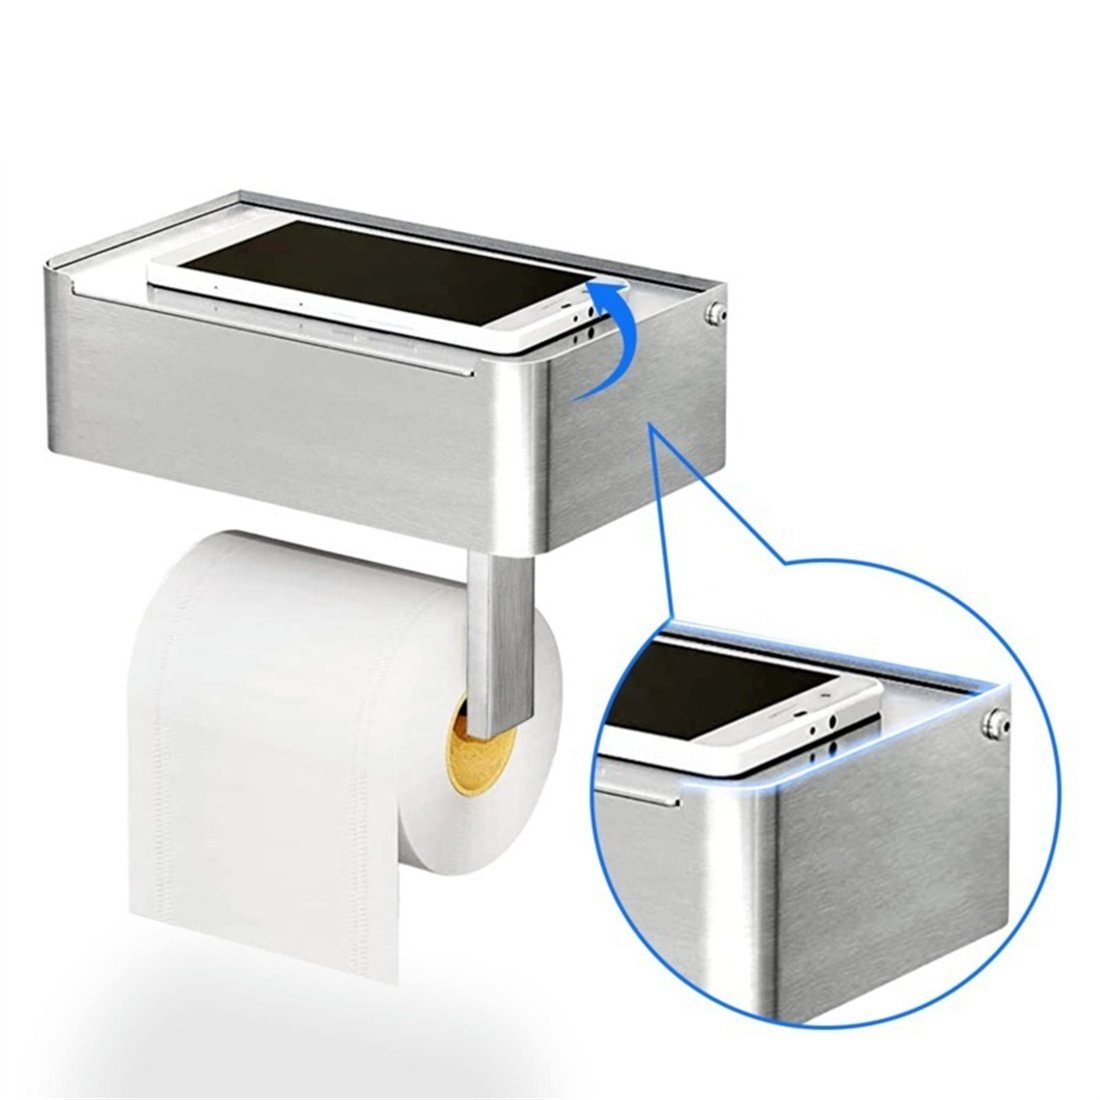 DÖRÖY Papiertuchspender Toilettenpapierrollenhalter aus Edelstahl, kein Bohren erforderlich